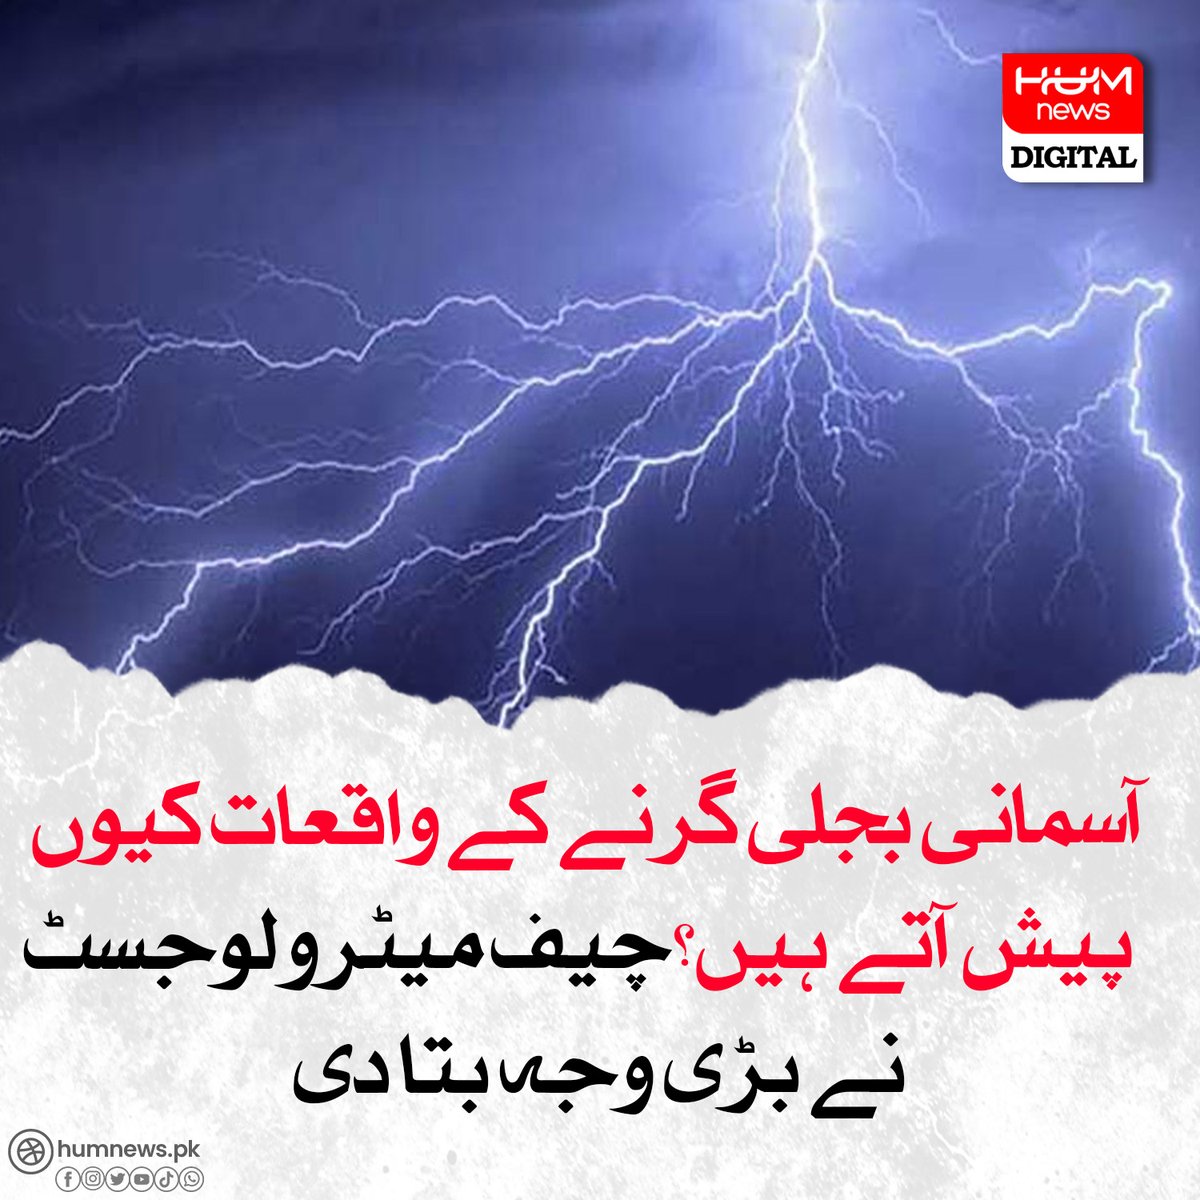 آسمانی بجلی گرنے کے واقعات کیوں پیش آتے ہیں؟ humnews.pk/latest/478765/